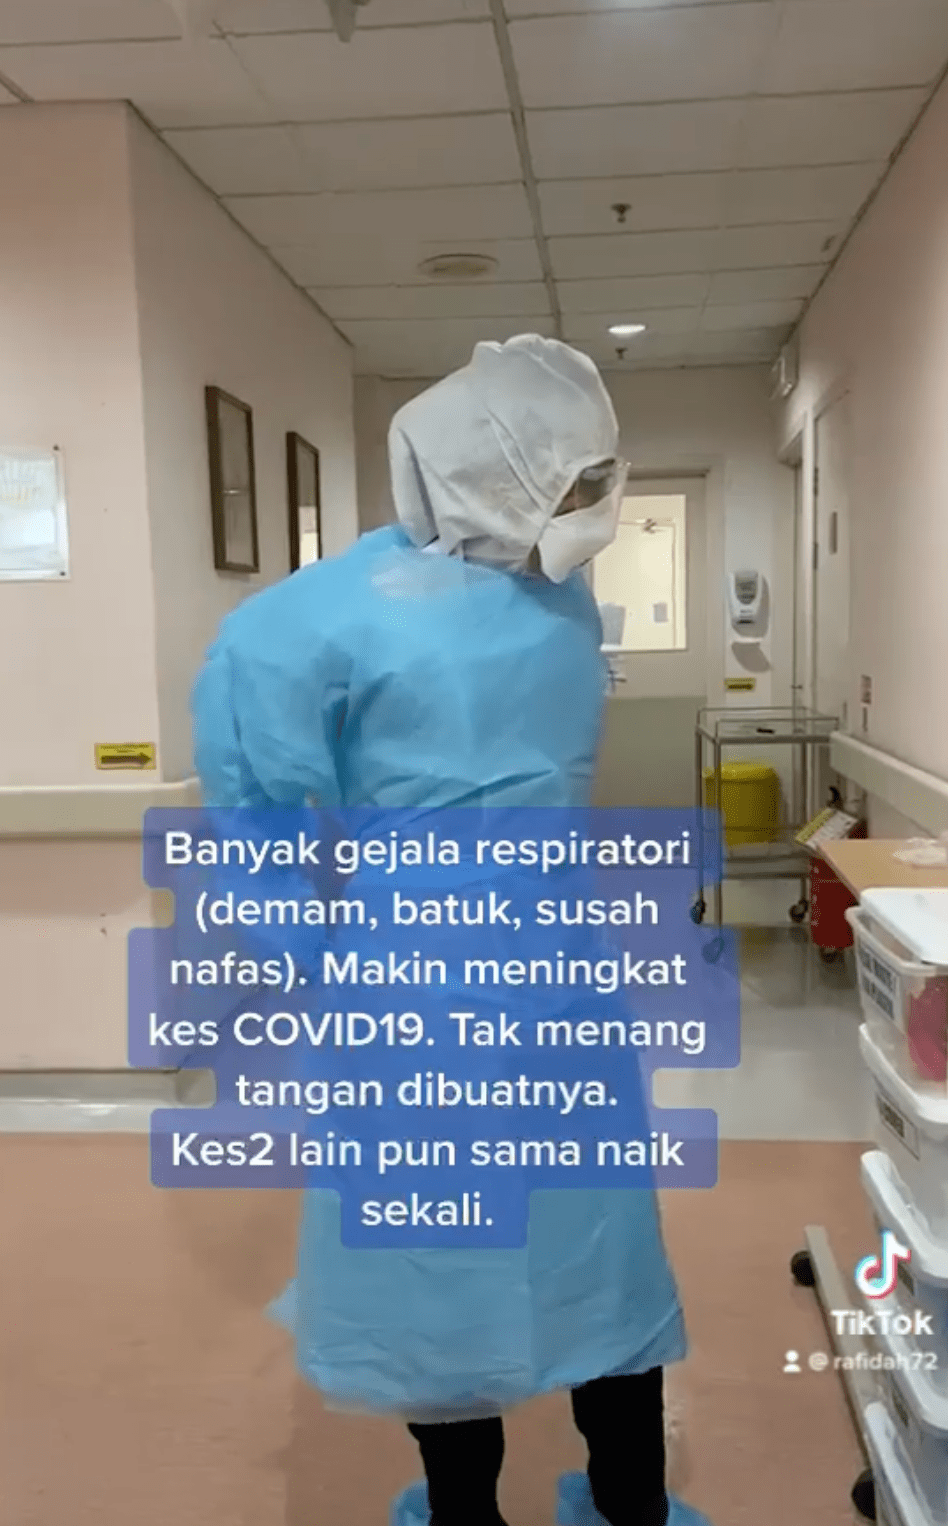 Dr rafidah abudullah hospital putrajaya 02